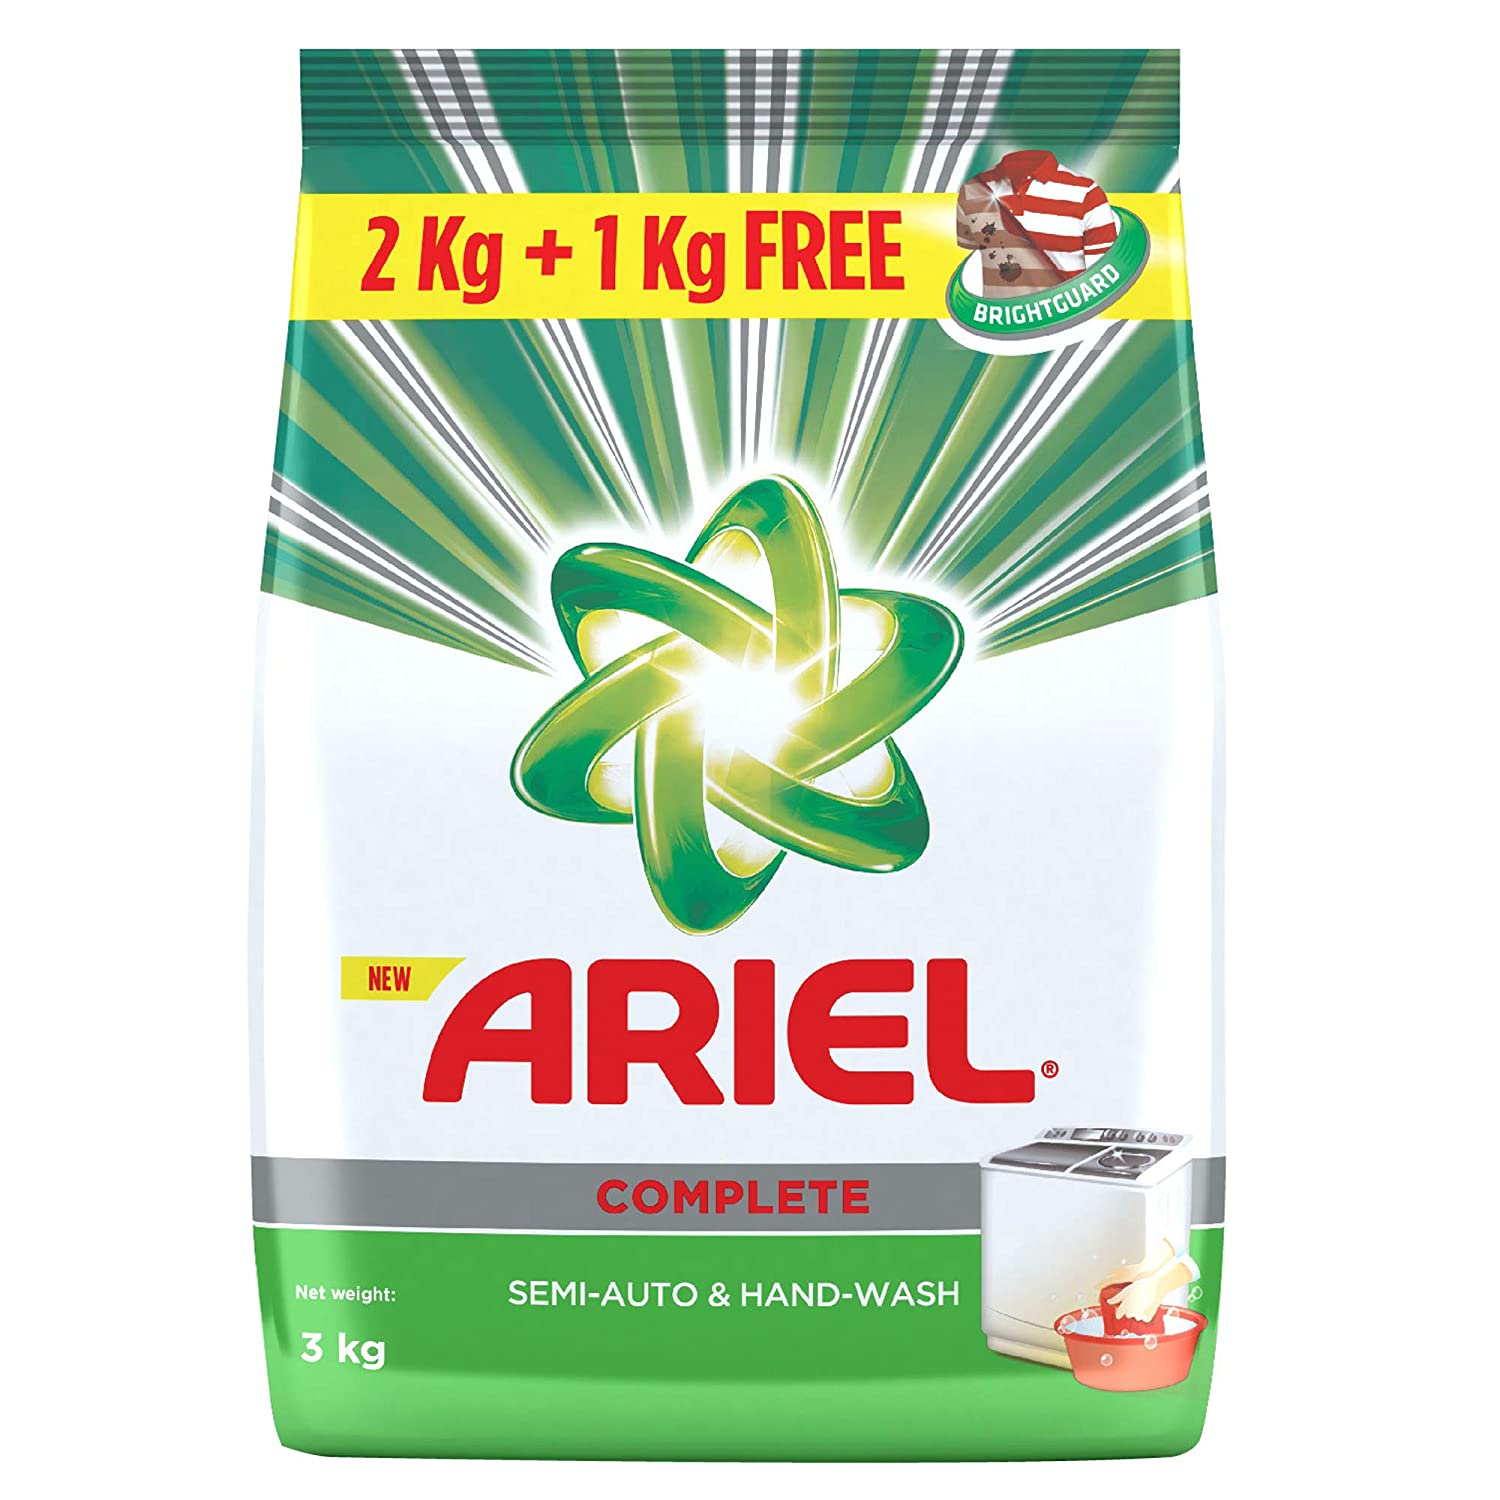 Ariel Complete Detergent Powder - 2 kg + 1 kg